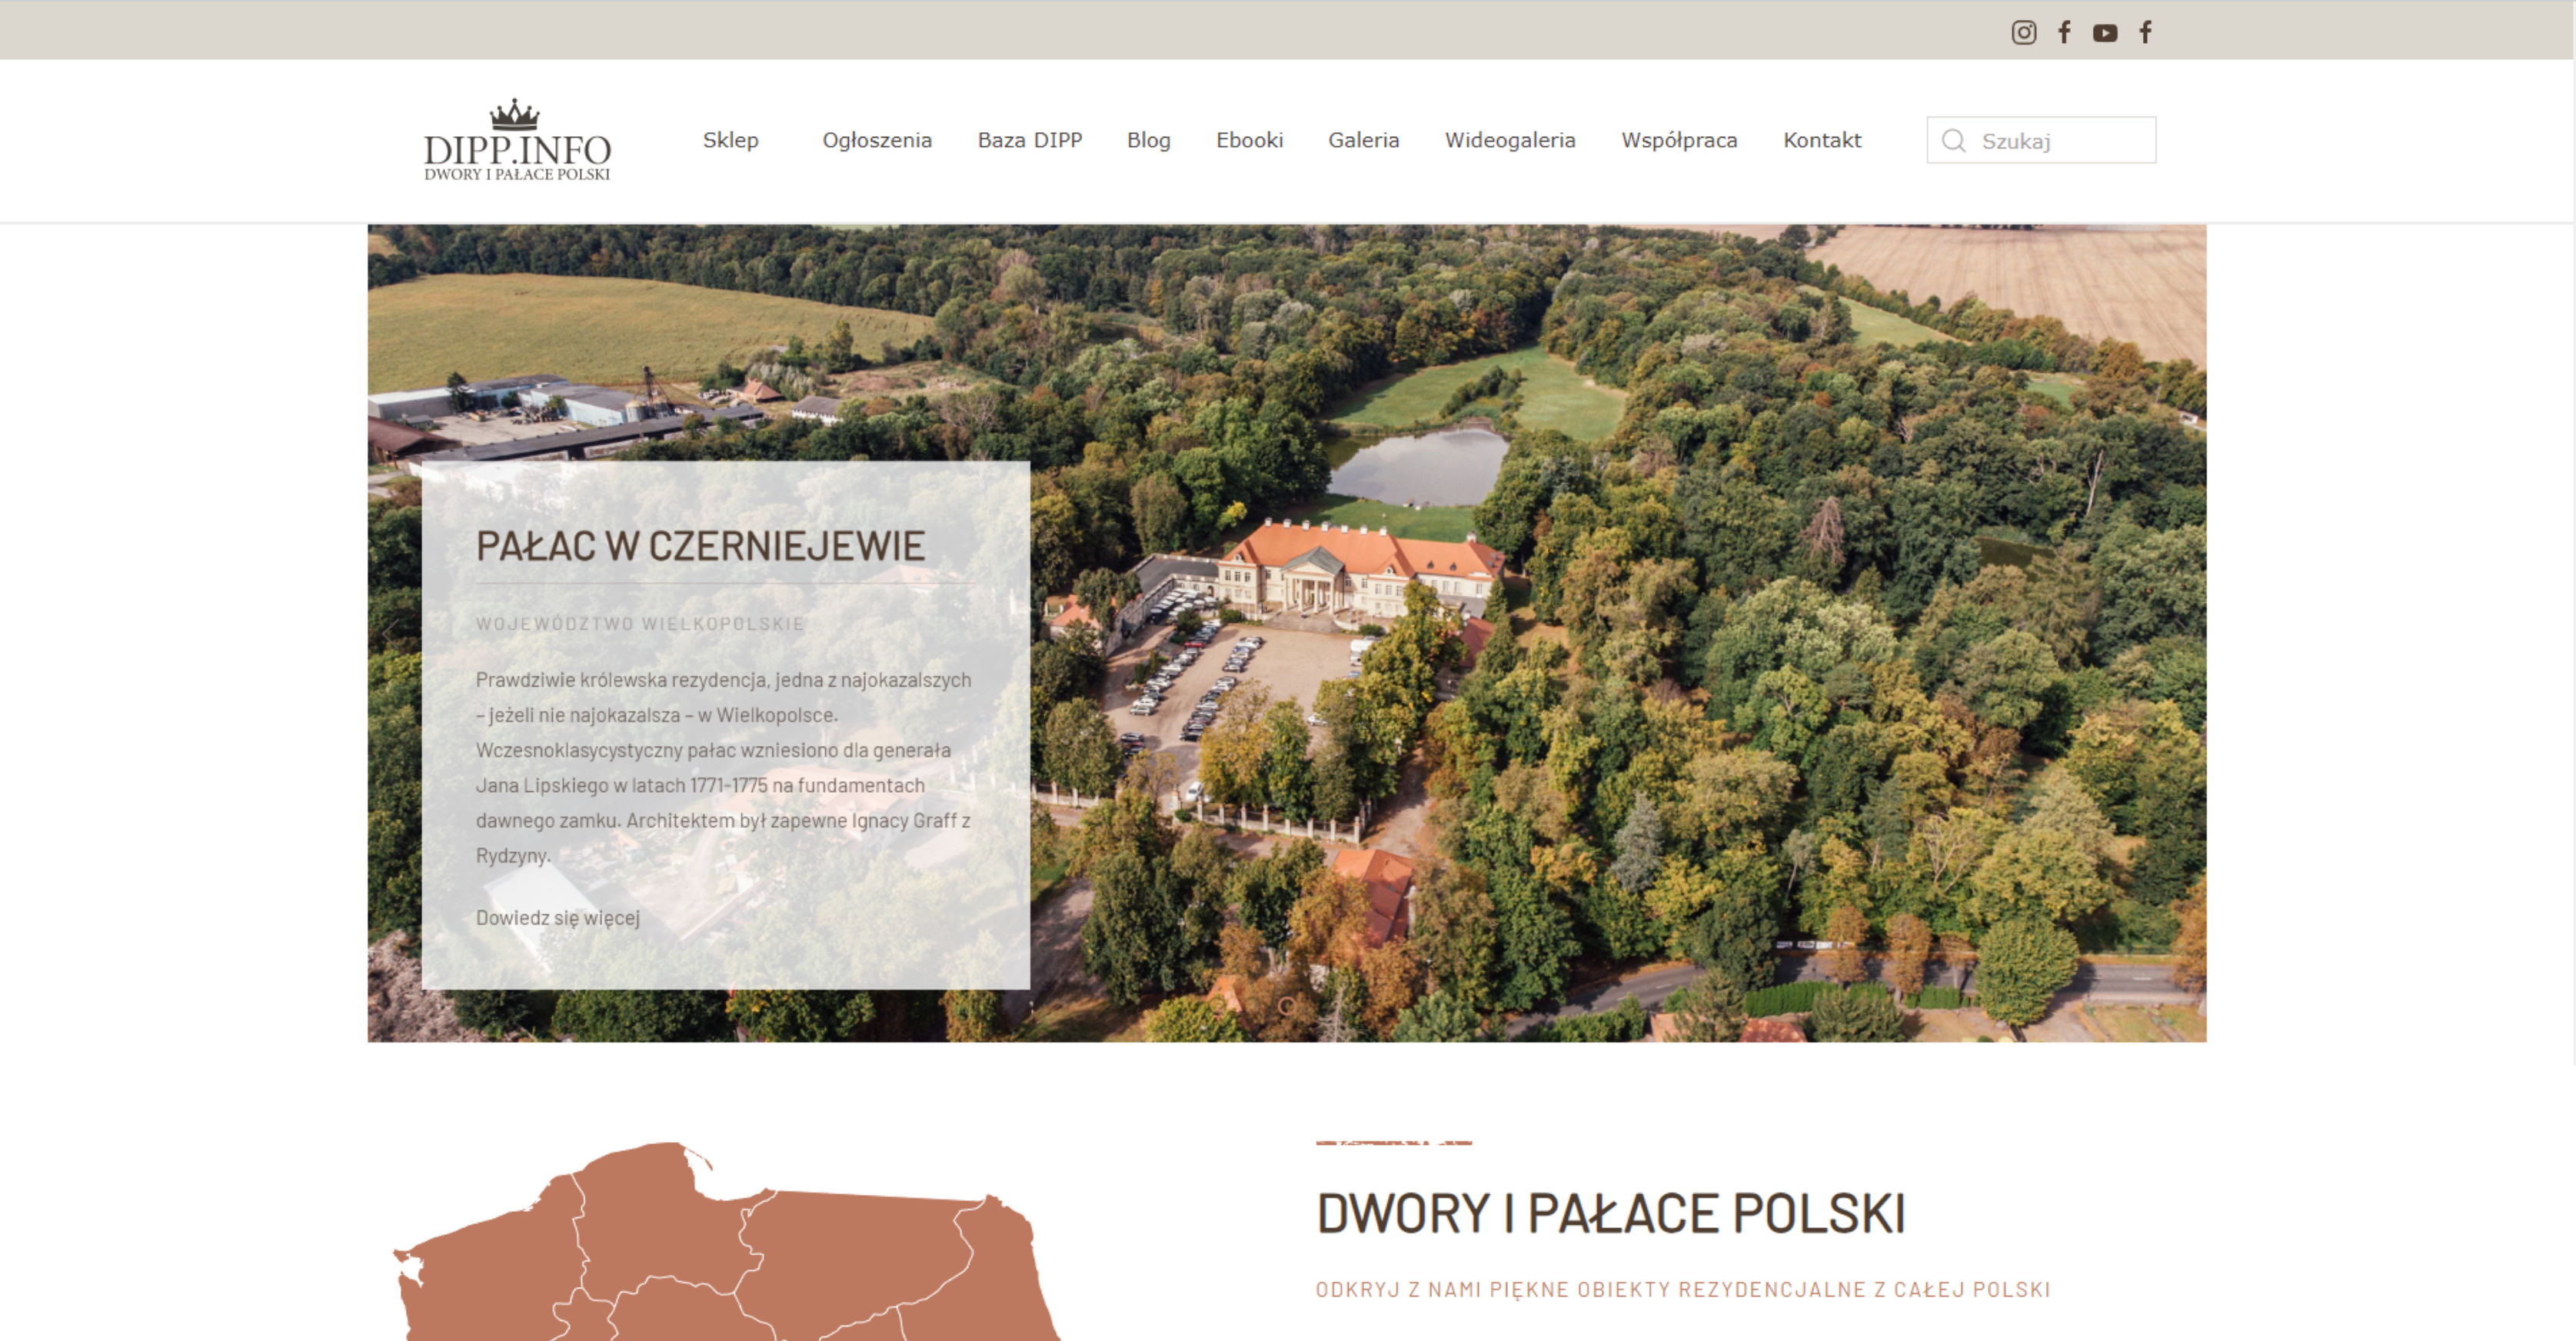 dwory i pałace polski book store website